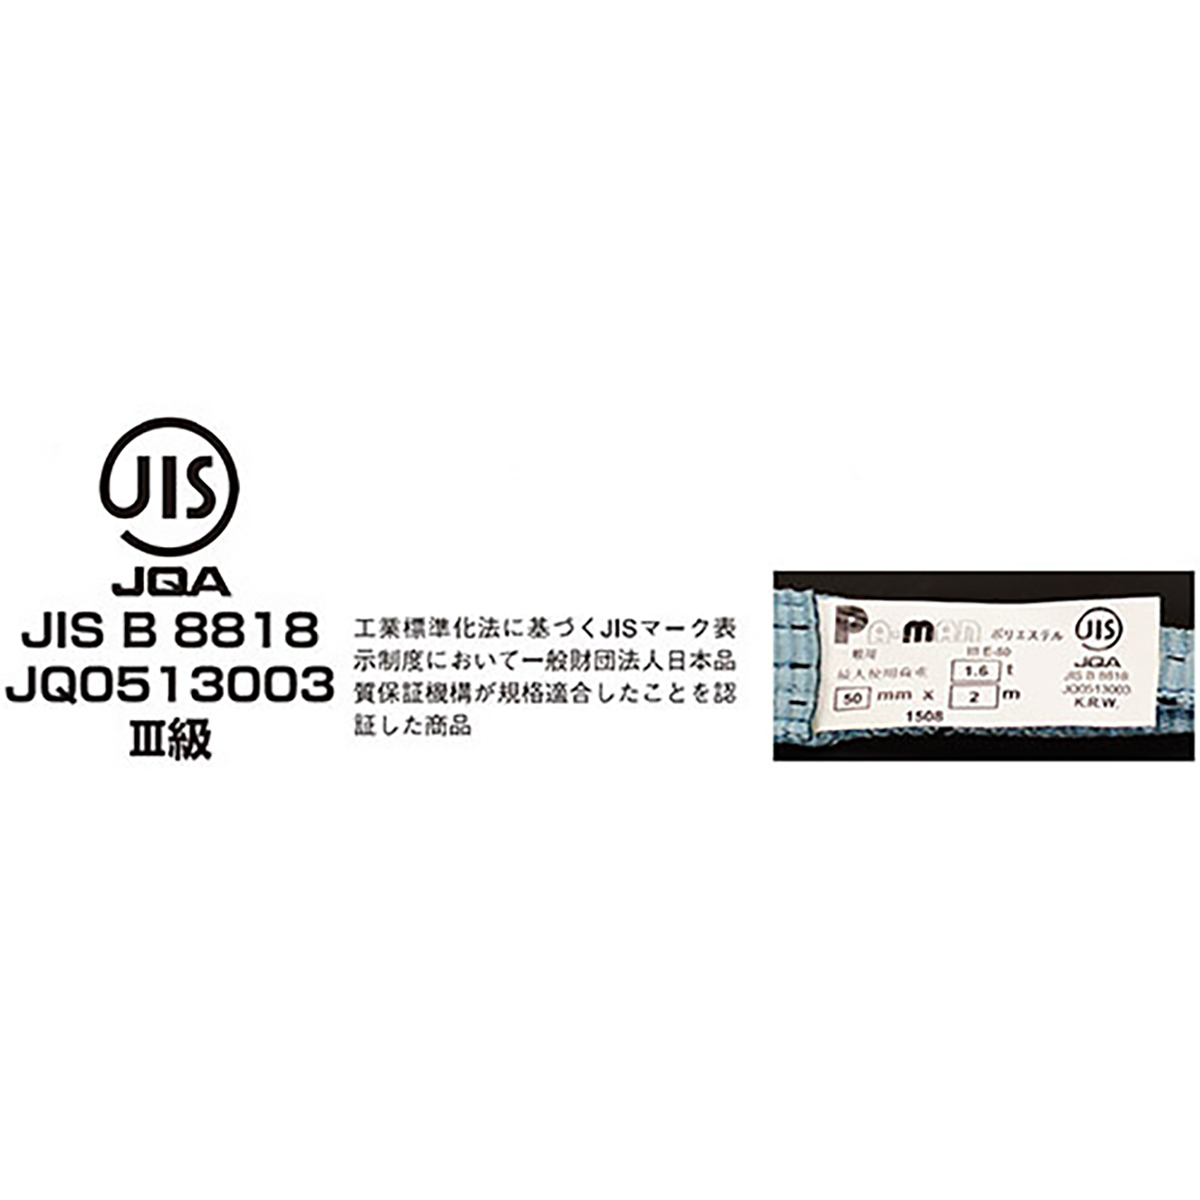 ポリベルトスリング JIS III級 ソフト面付 巾50mm 1m 1本